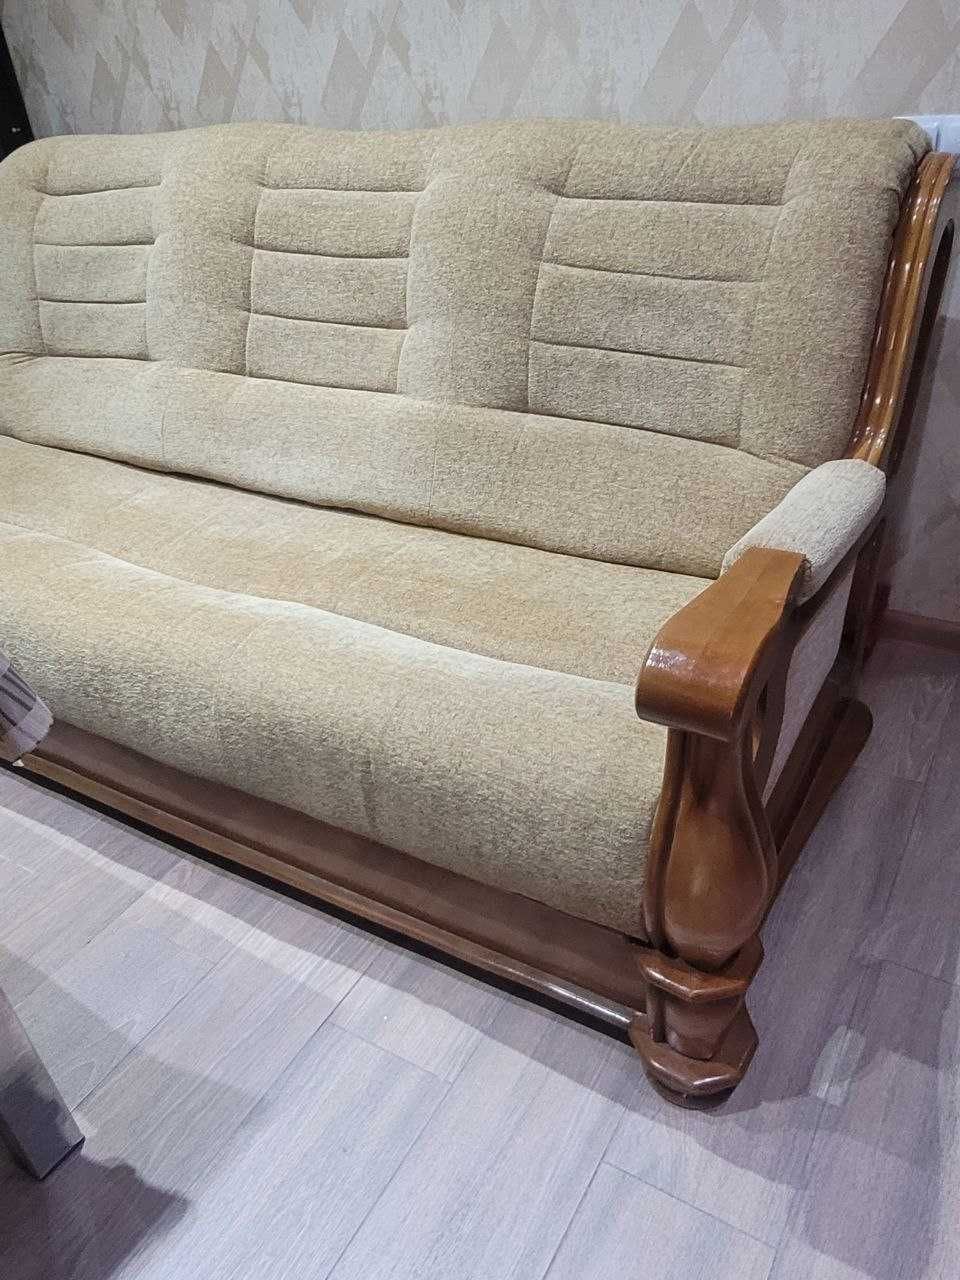 Продам добротный диван в отличном состоянии